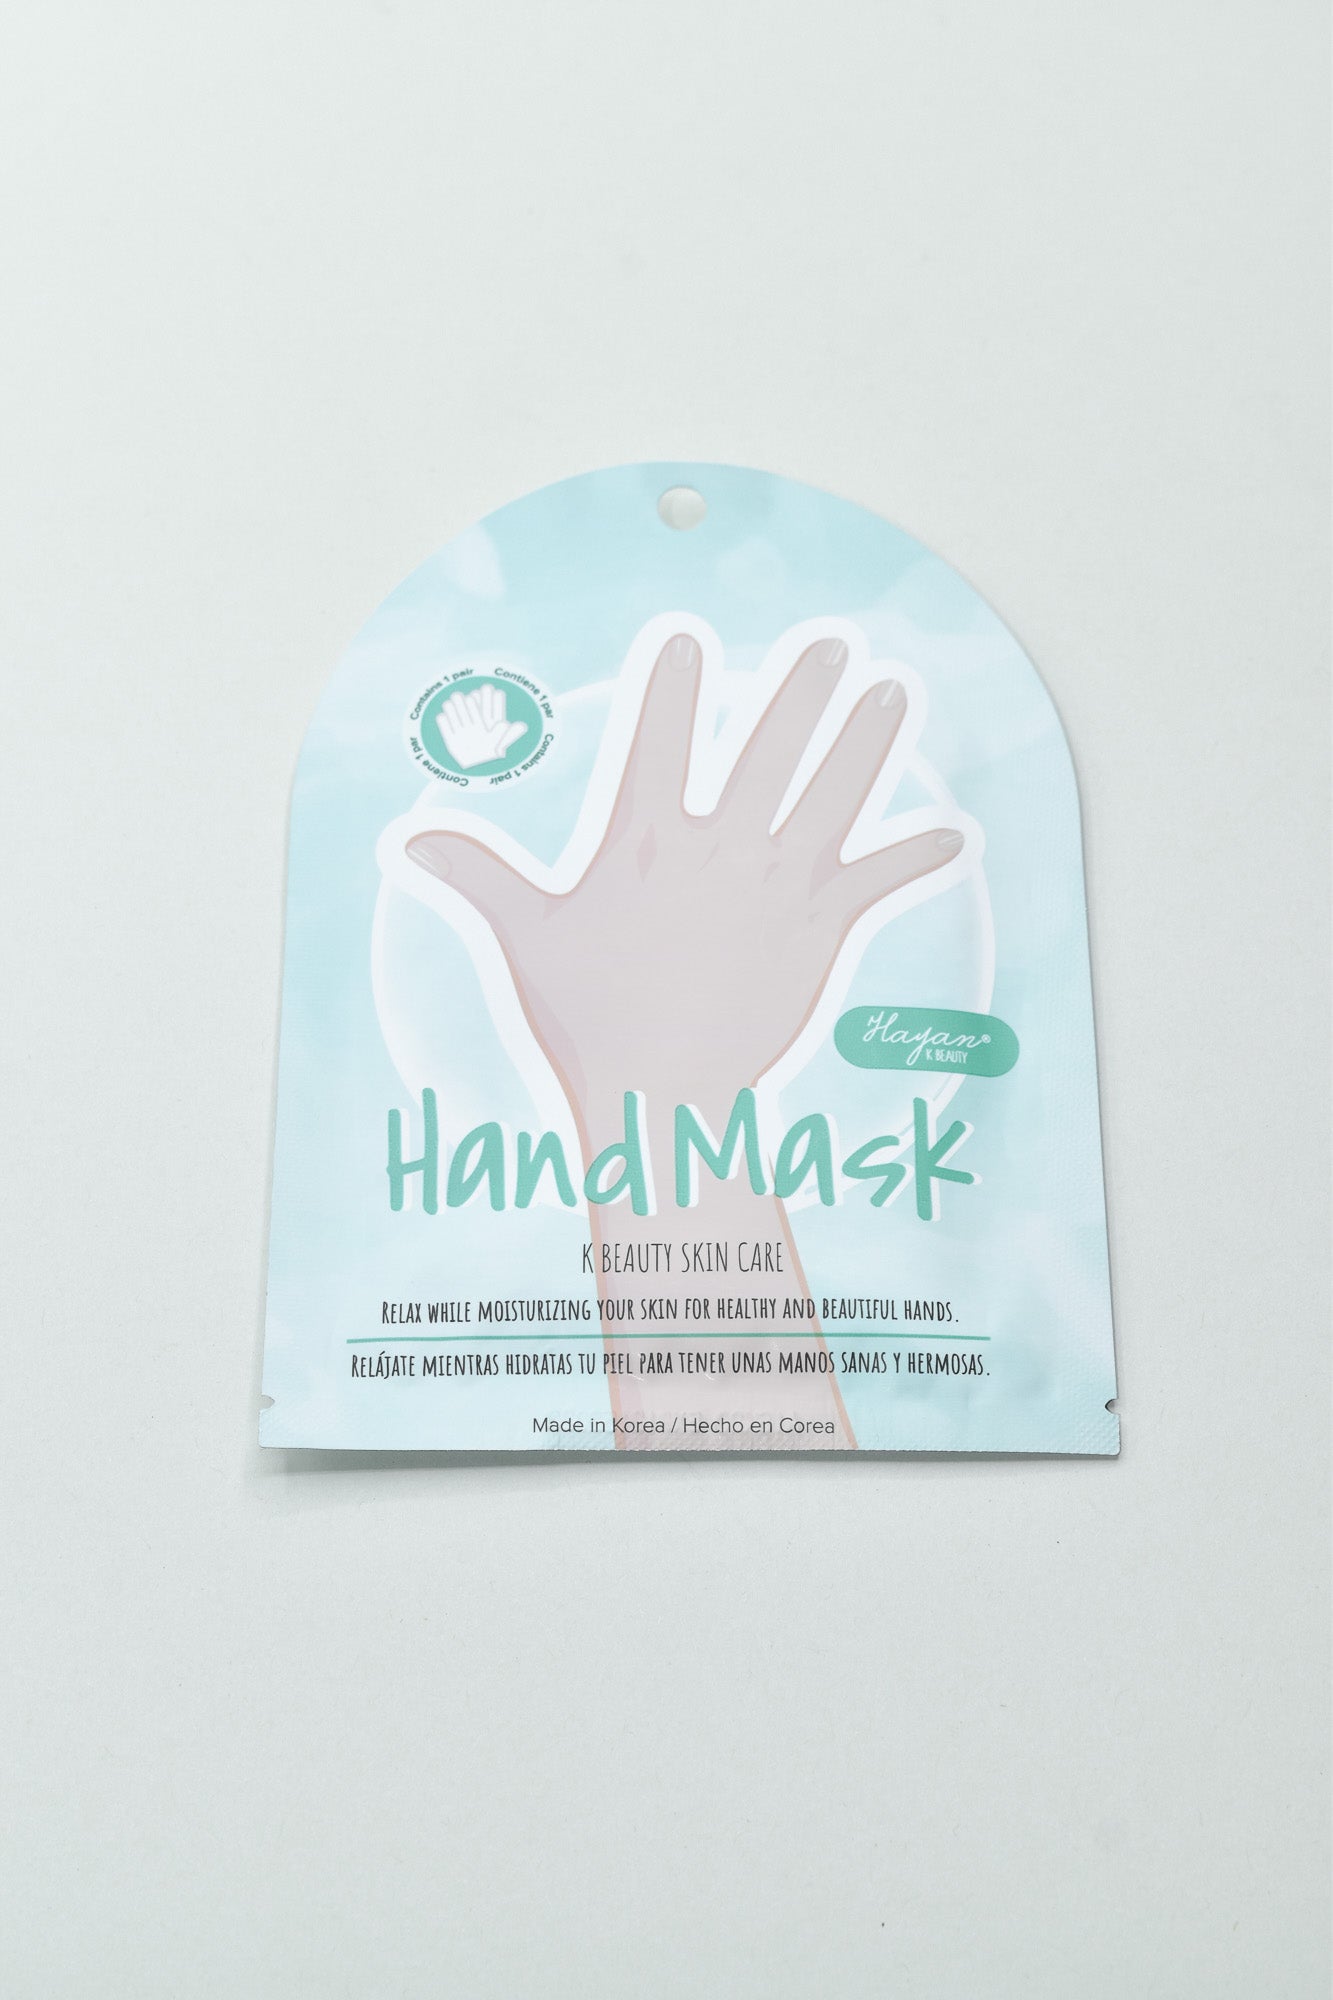 Handmask